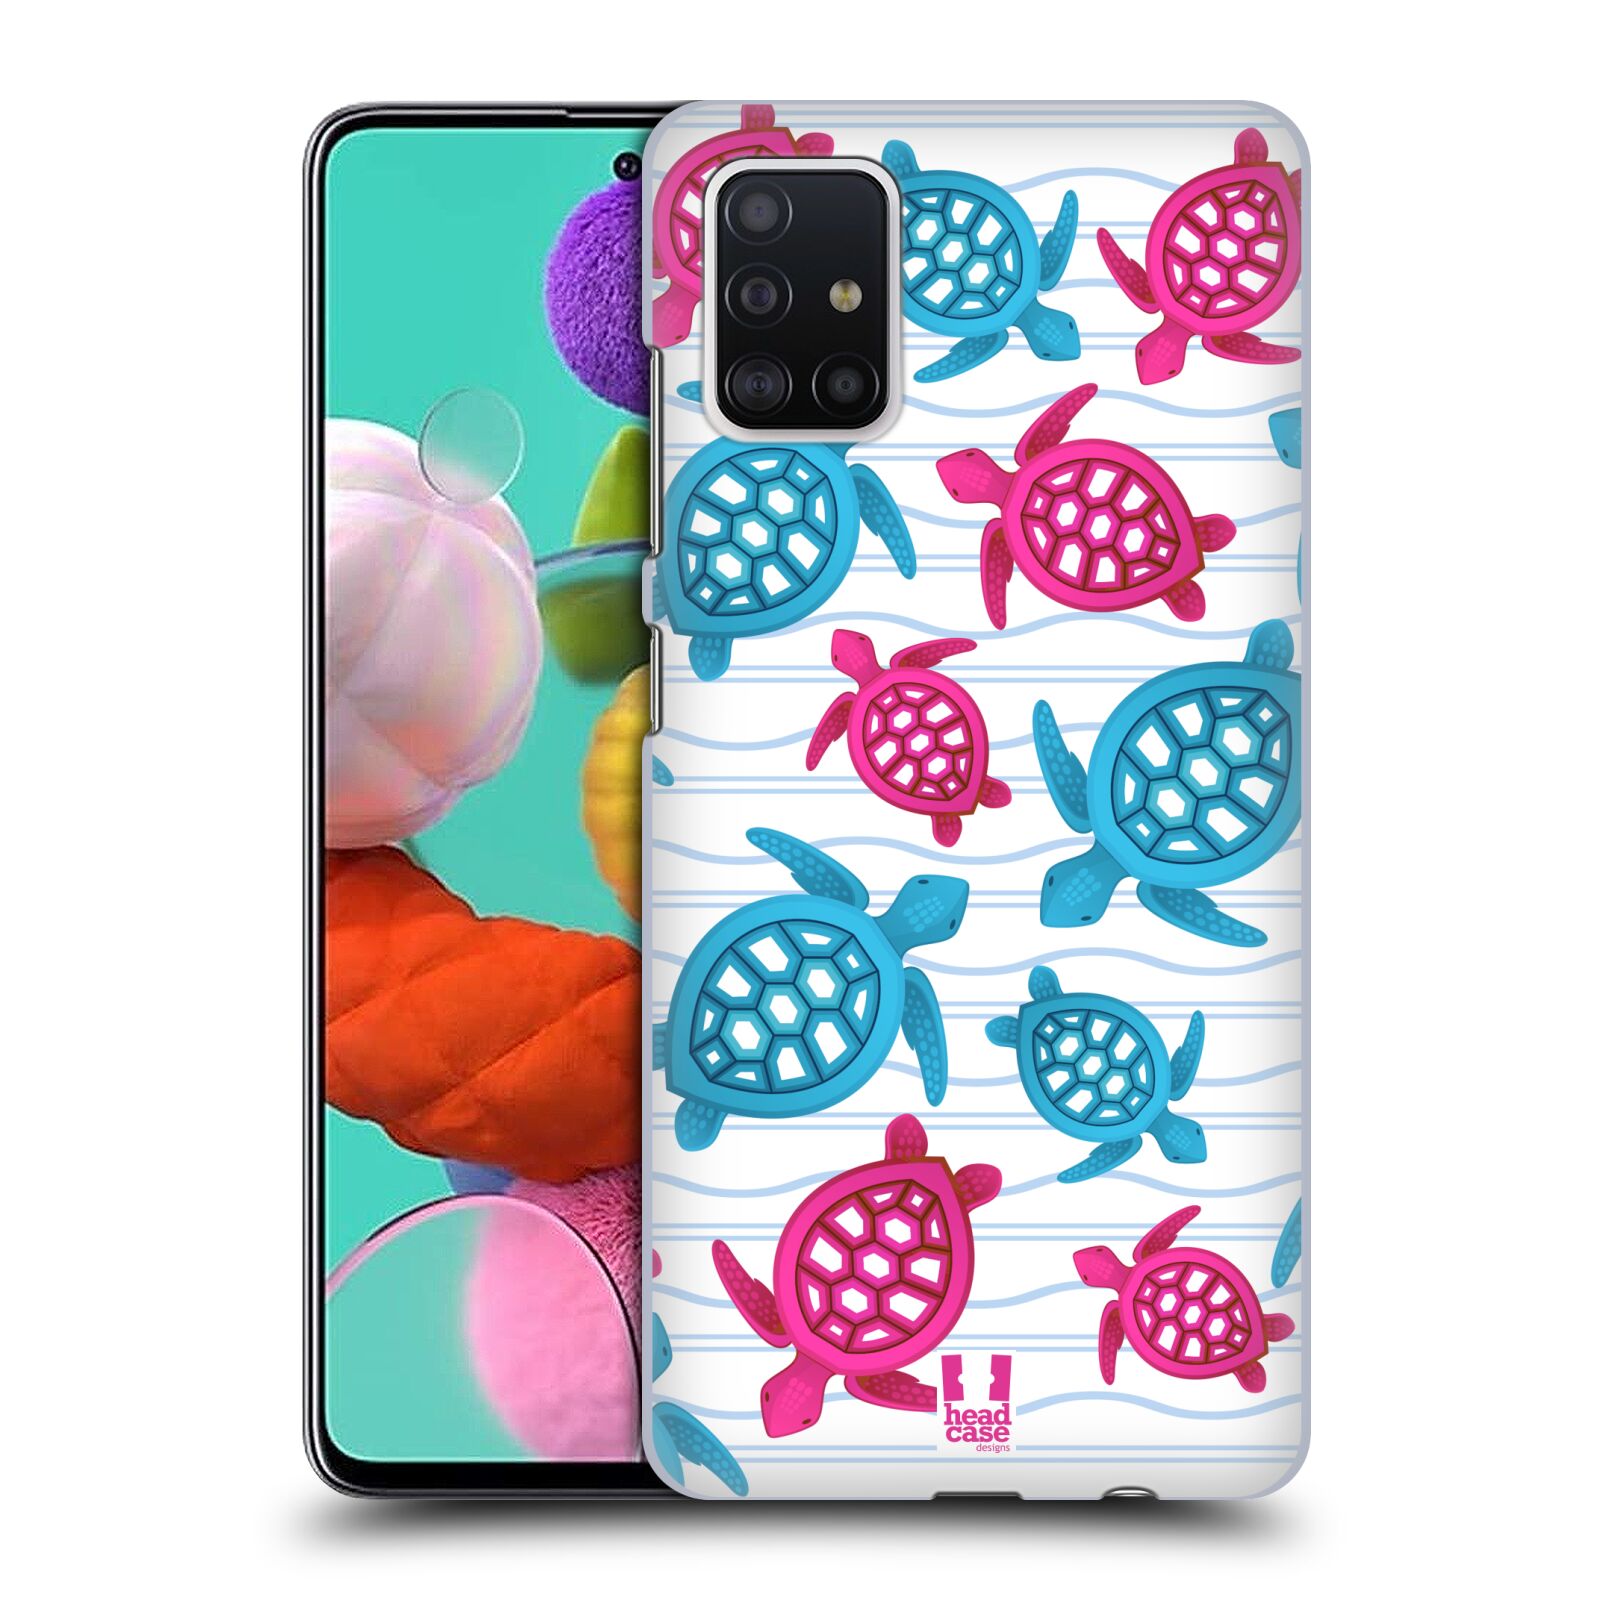 Zadní obal pro mobil Samsung Galaxy A51 - HEAD CASE - kreslený mořský vzor želvičky